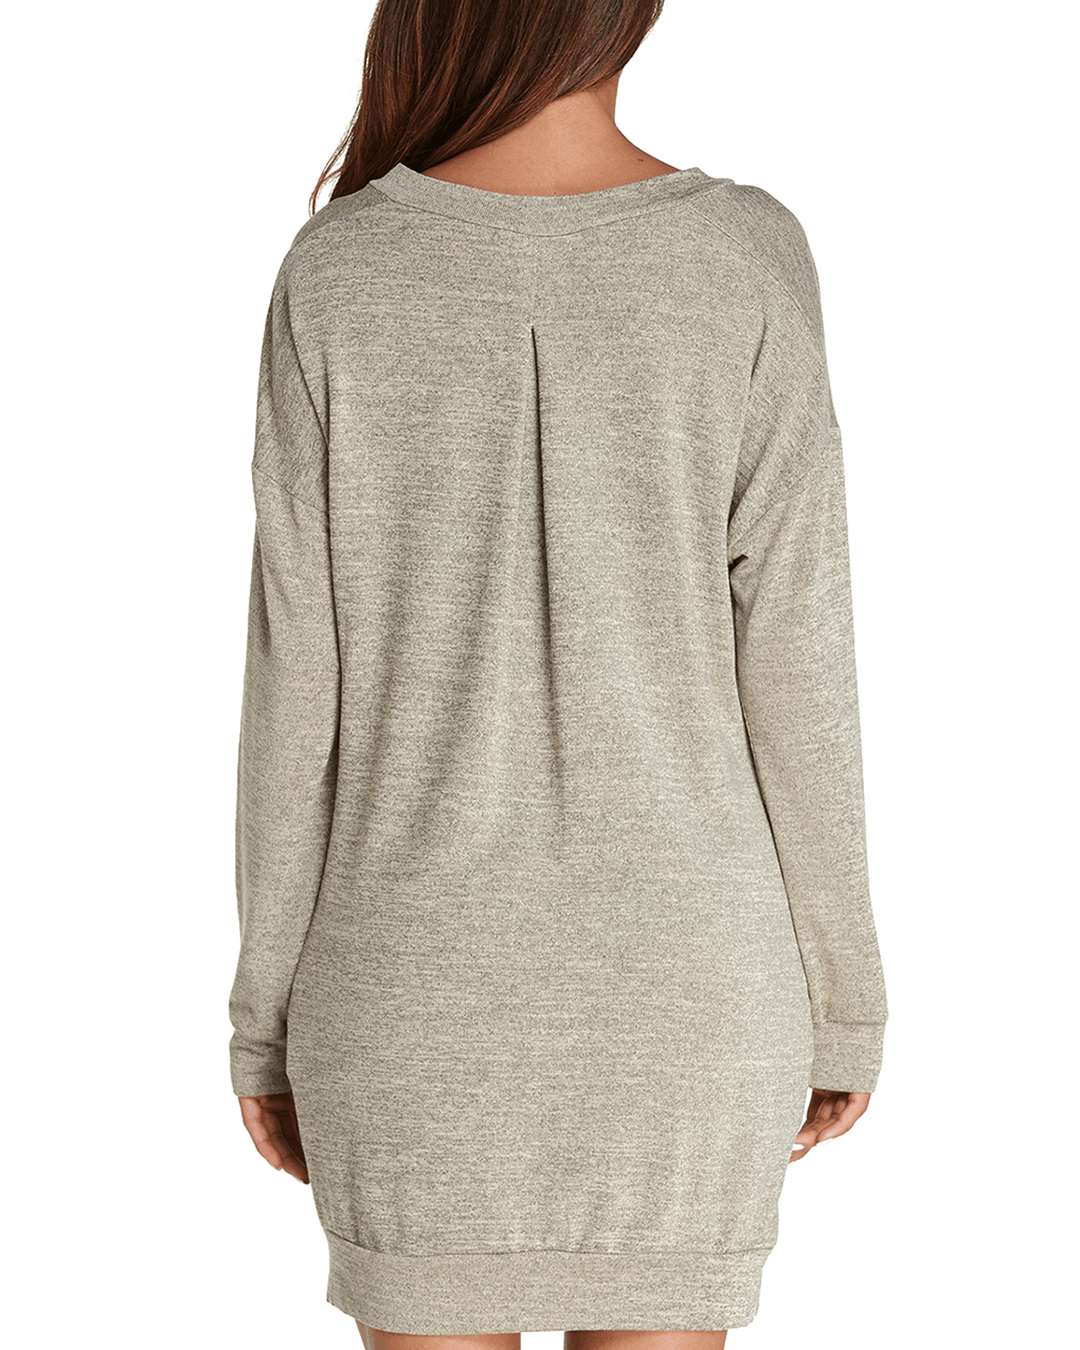 Women Long Sleeve Side Split Loose Casual Pullover Sweatshirt Dress with Pockets - MRSLM